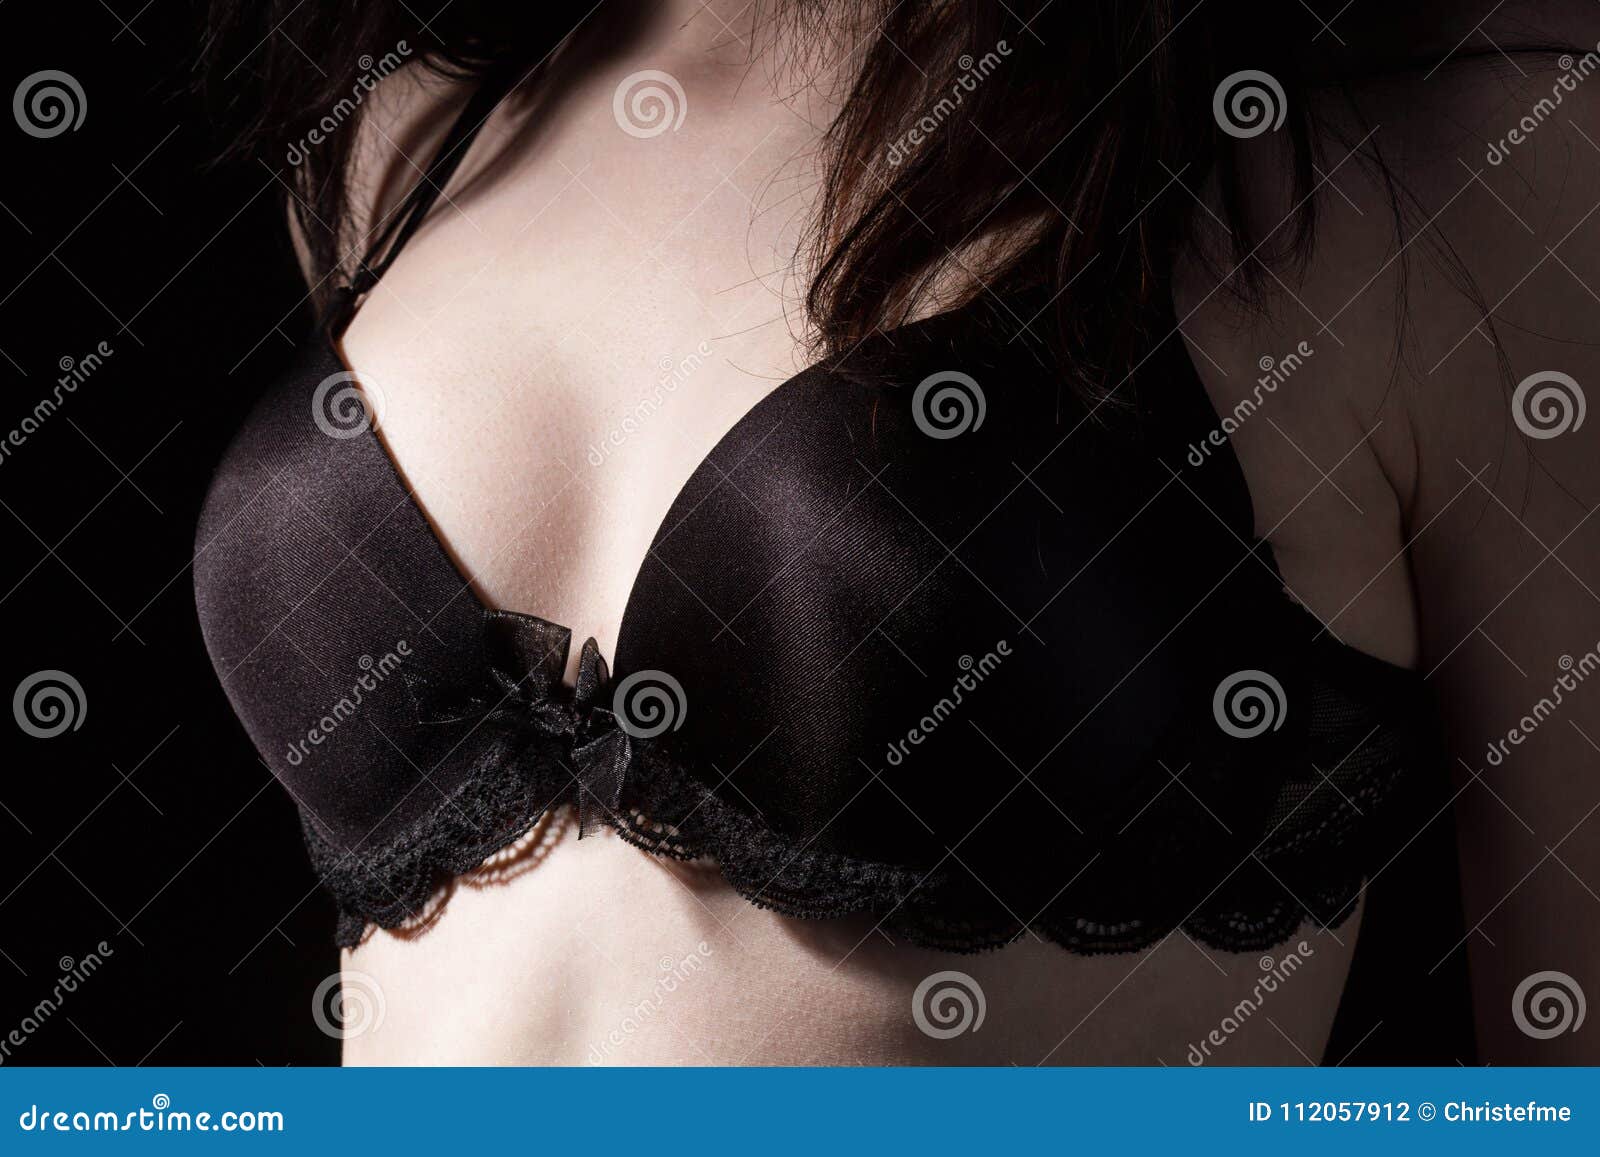 черная грудь в белом лифчике фото 8